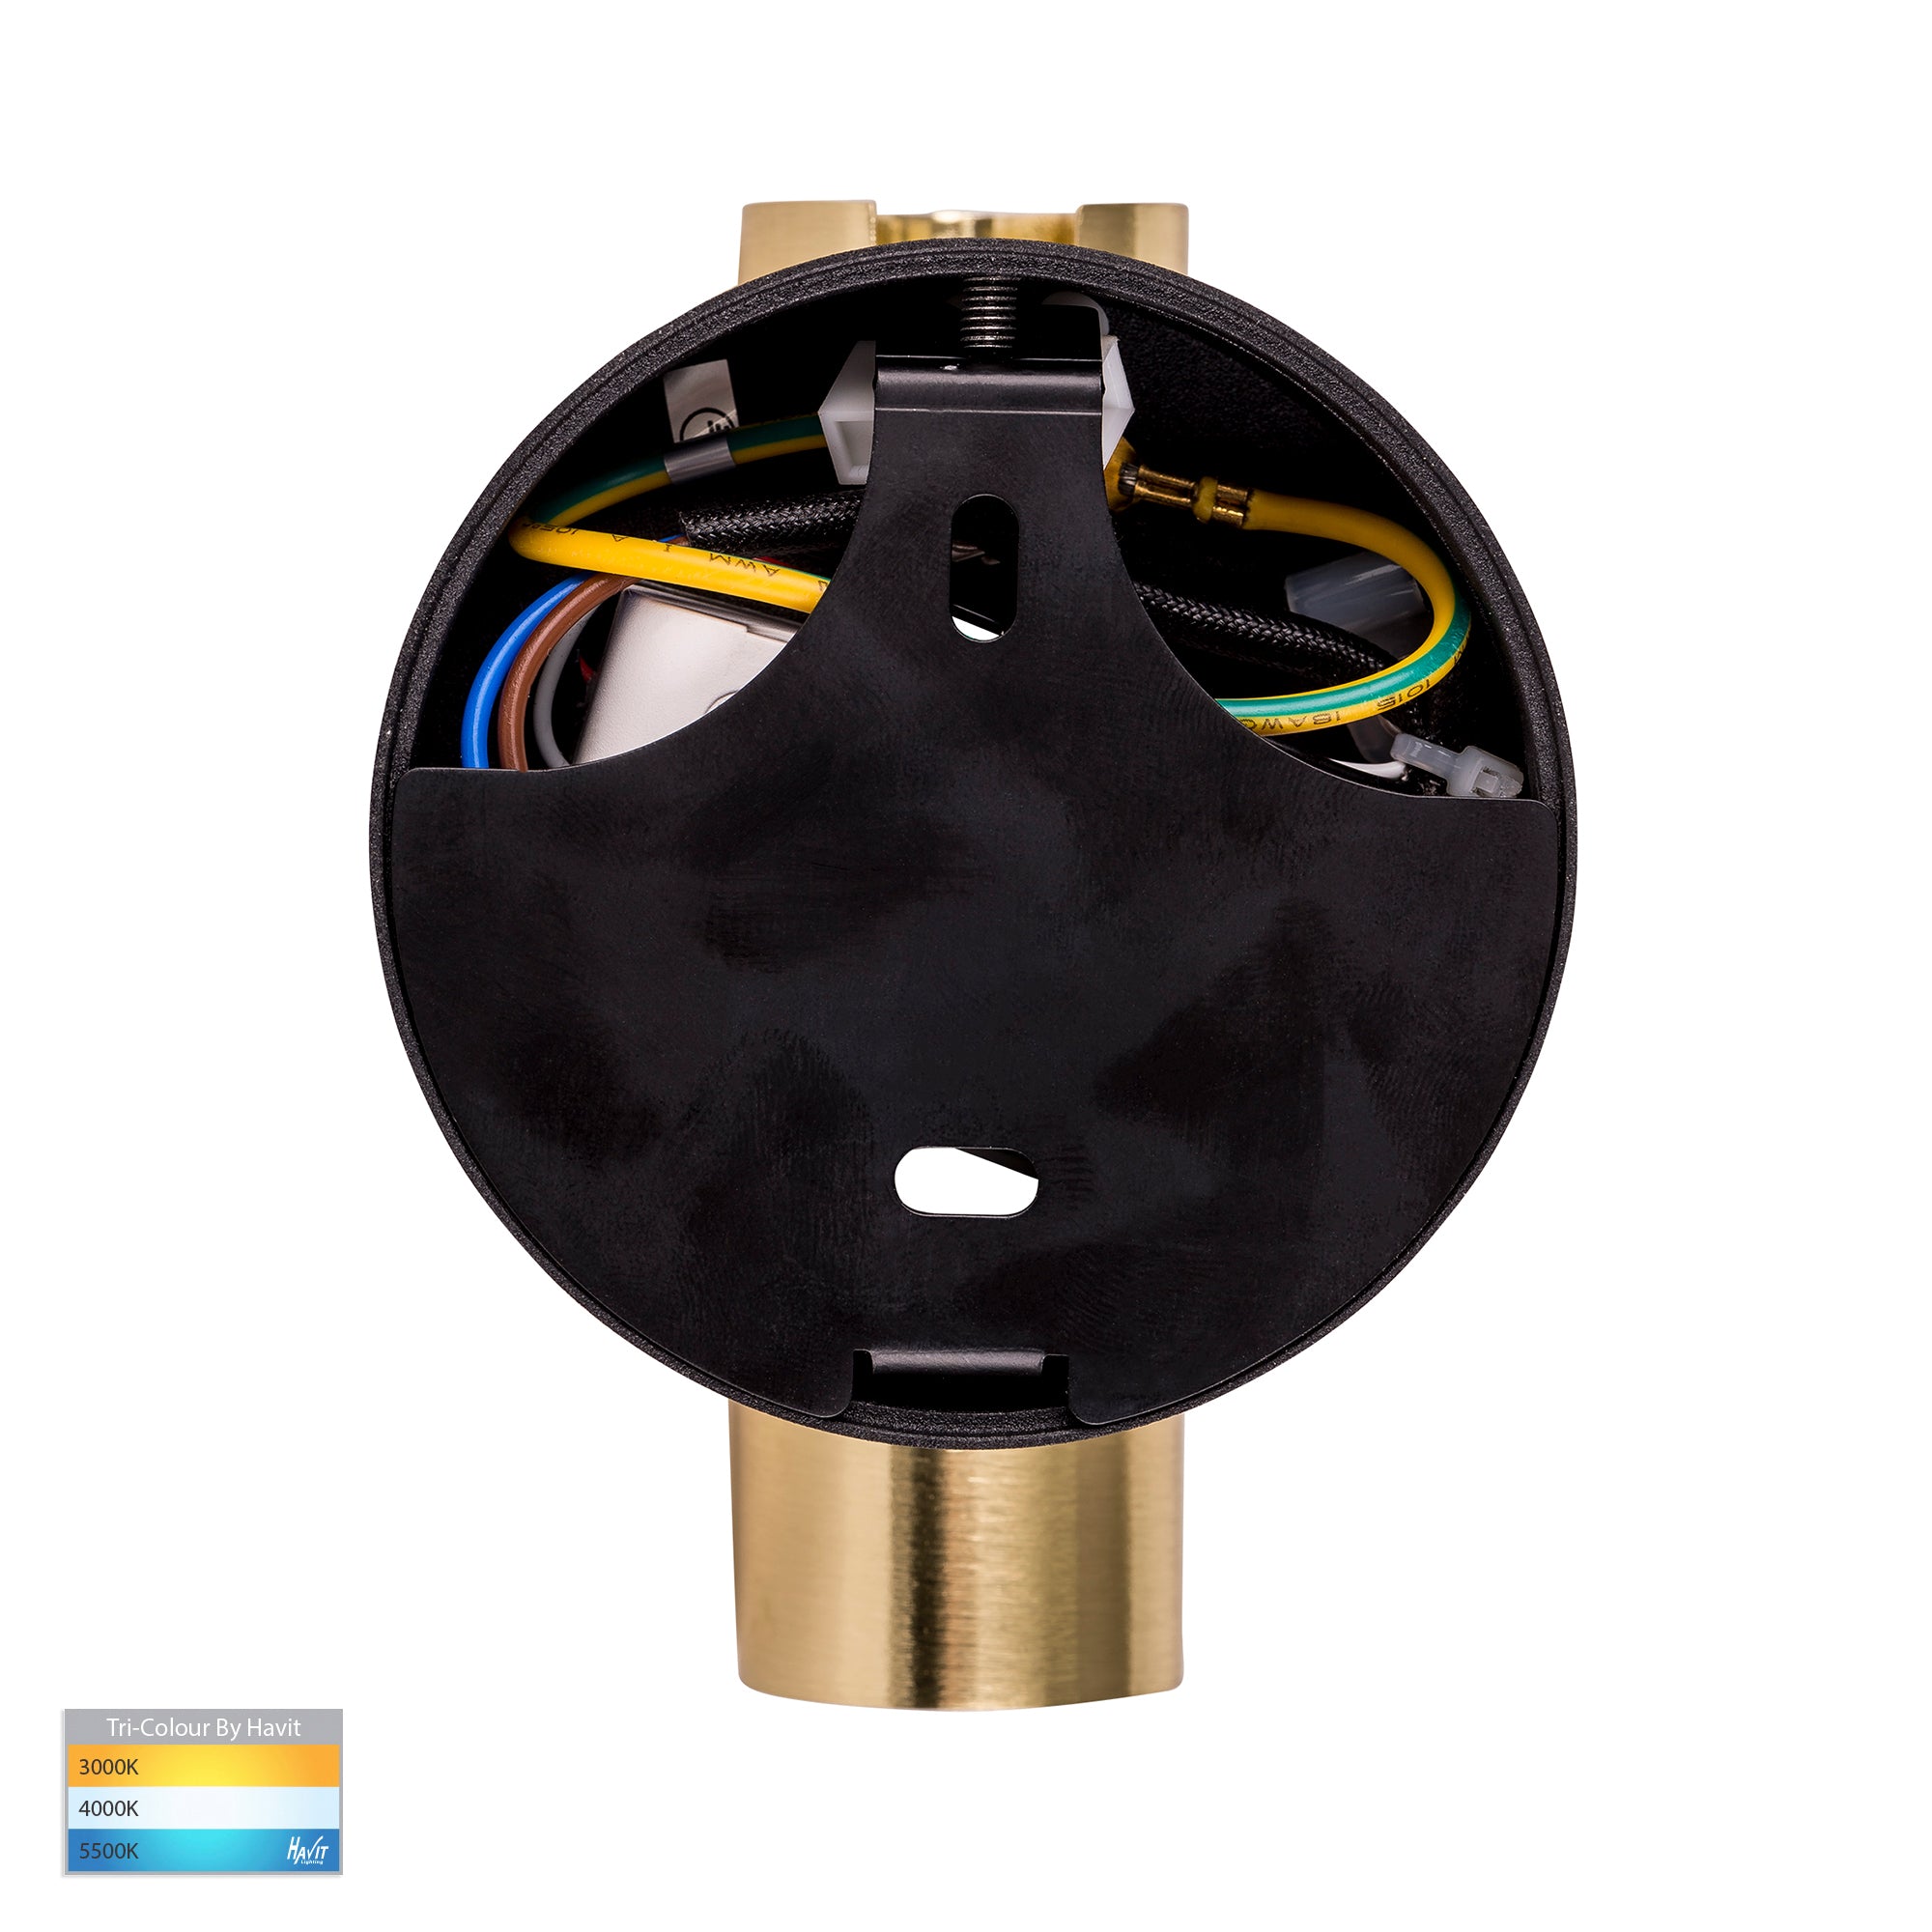 HV3689T-BLKBR - Lesen Black Brass Single Adjustable Wall Light